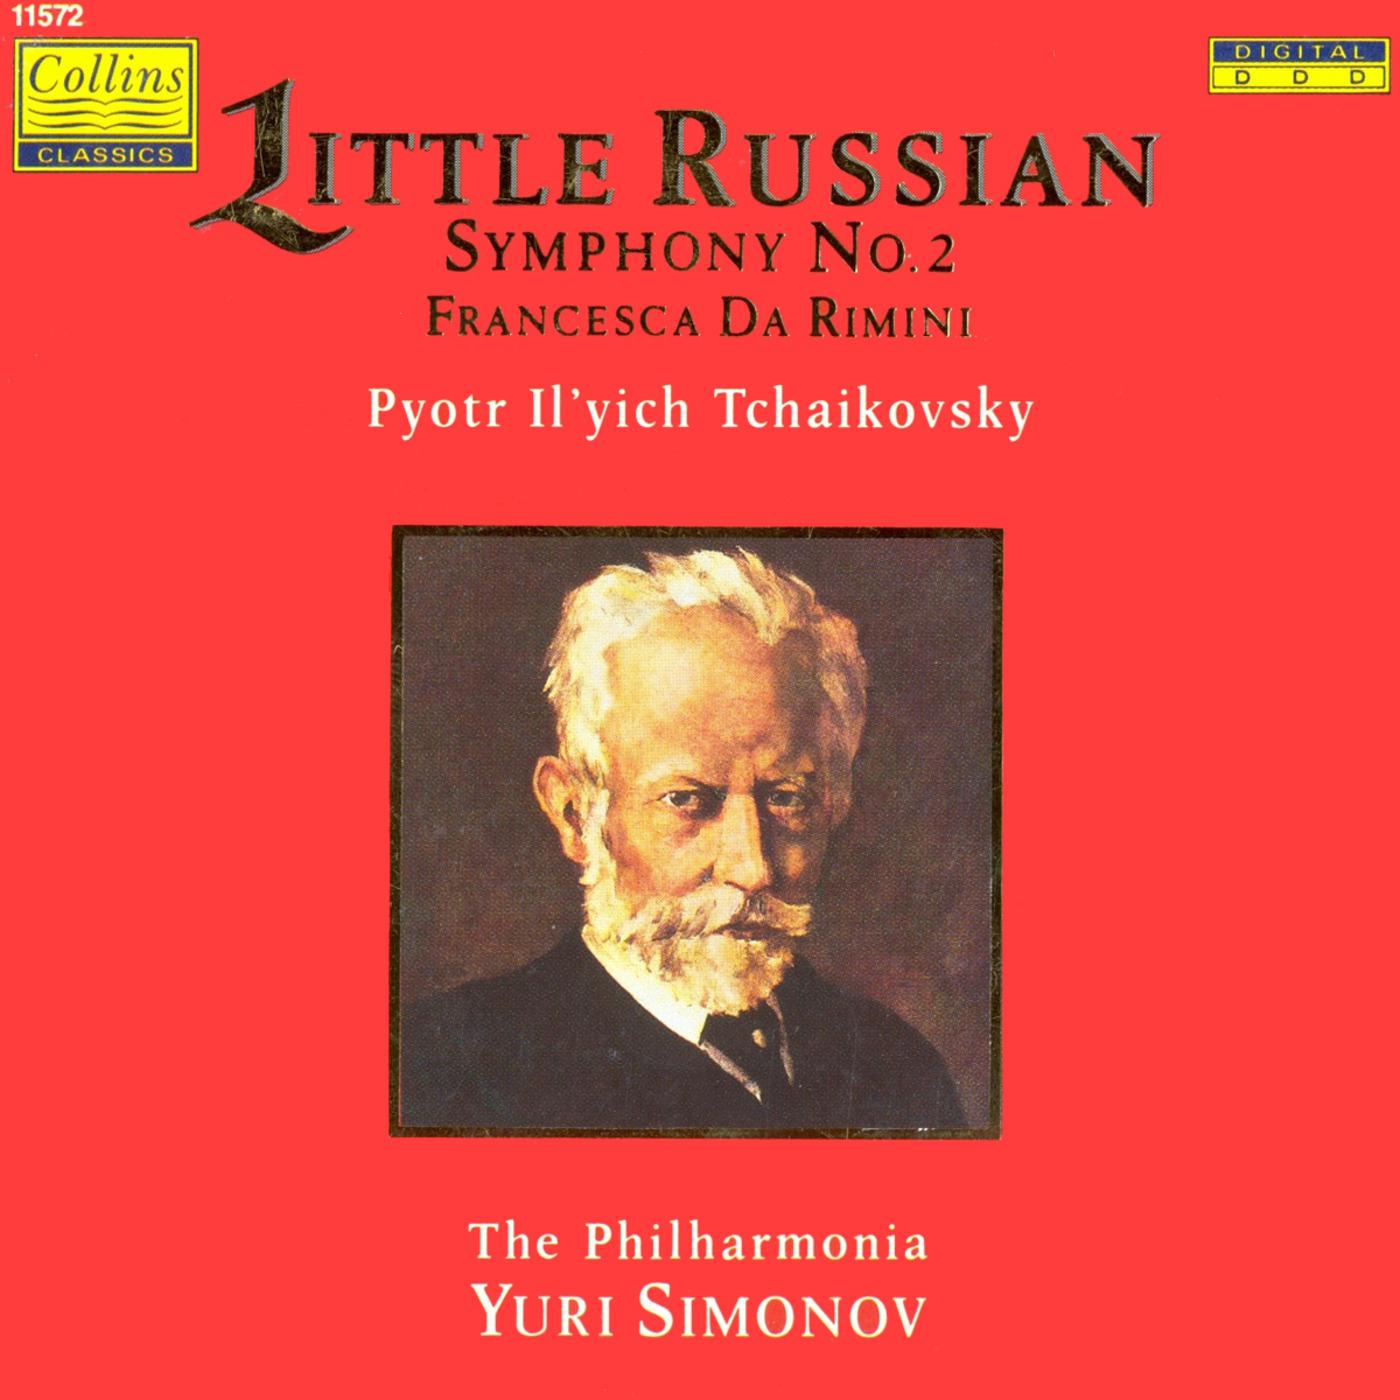 Symphony No. 2 in C Minor, Op. 17, "Little Russian": I. Andante sostenuto - Allegro vivo